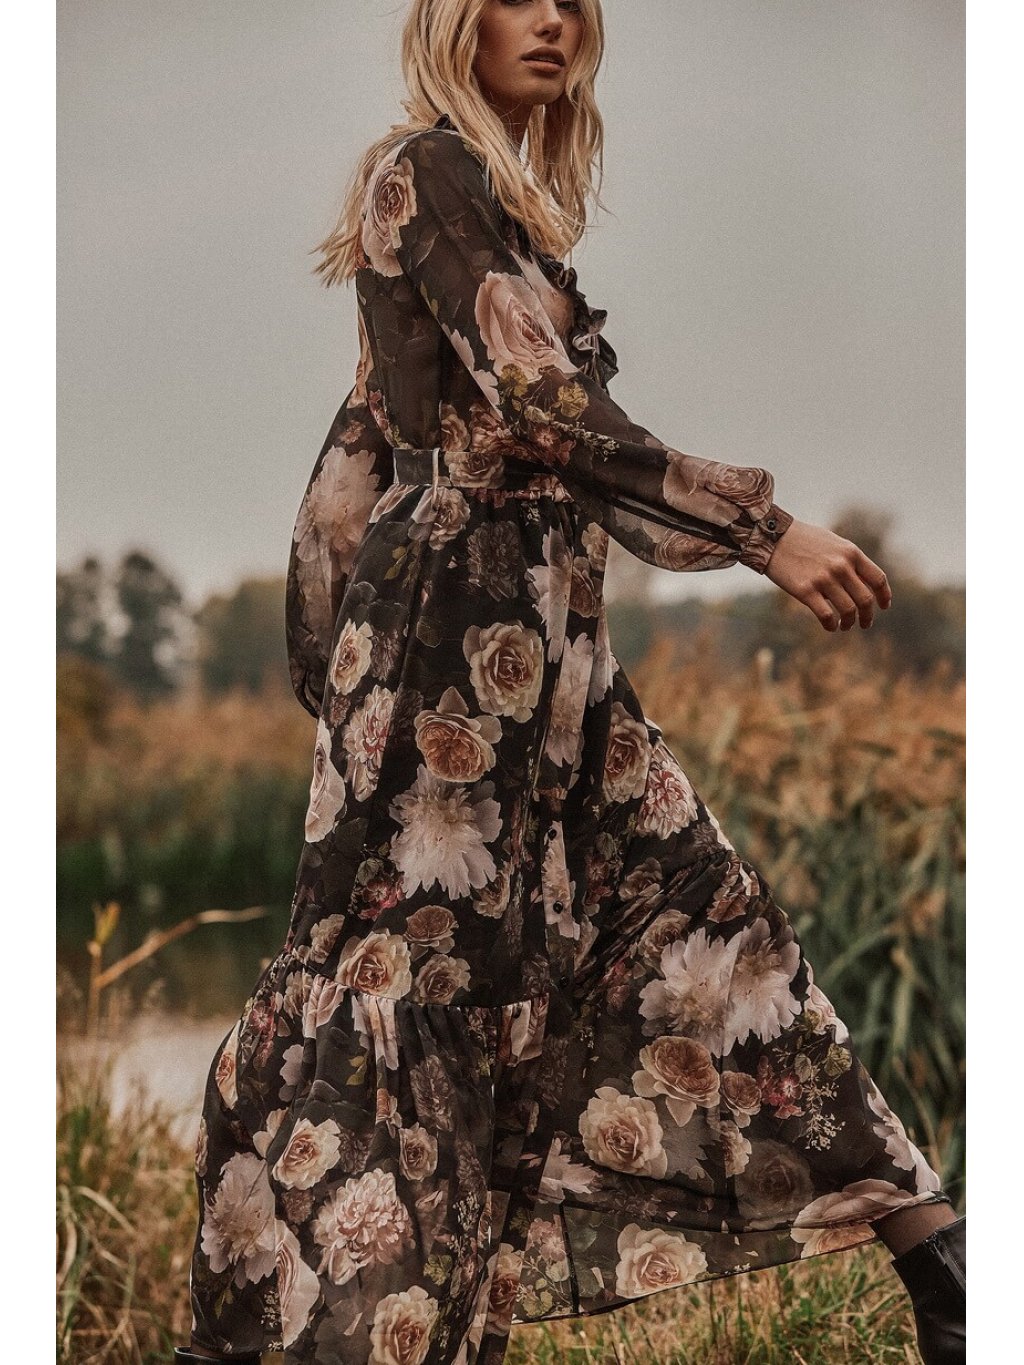 Šaty Tova Cyganeria tmavé s květy dlouhé